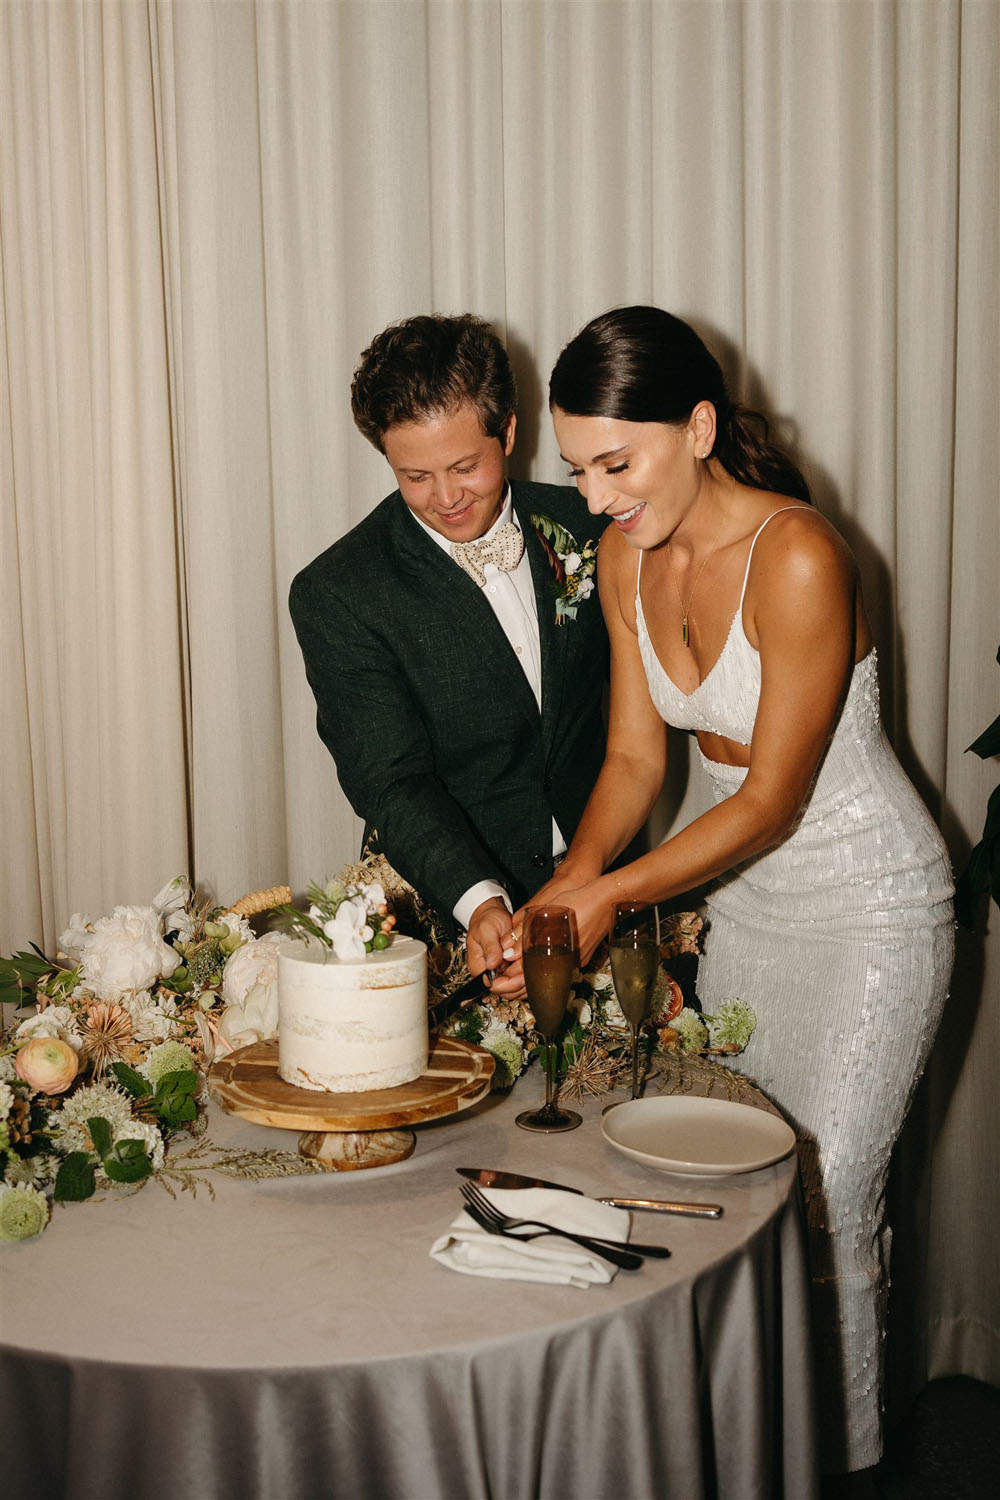 cake cutting at modern wedding